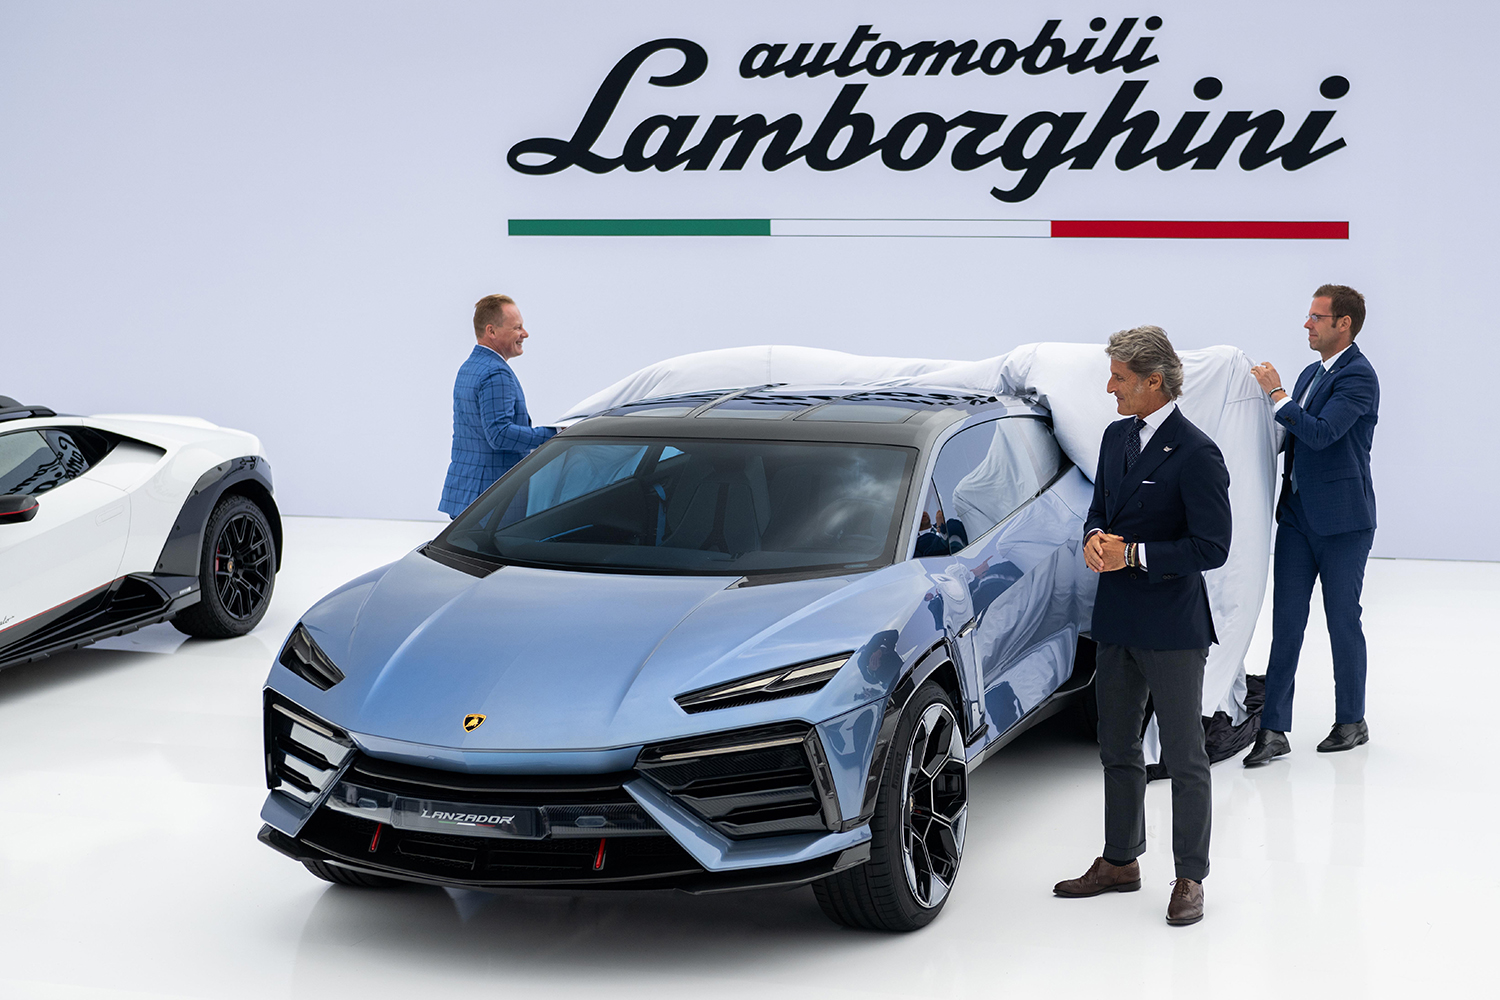 The Lamborghini Lanzador with Stephan Winkelmann, Chairman and CEO of Automobili Lamborghini (right)